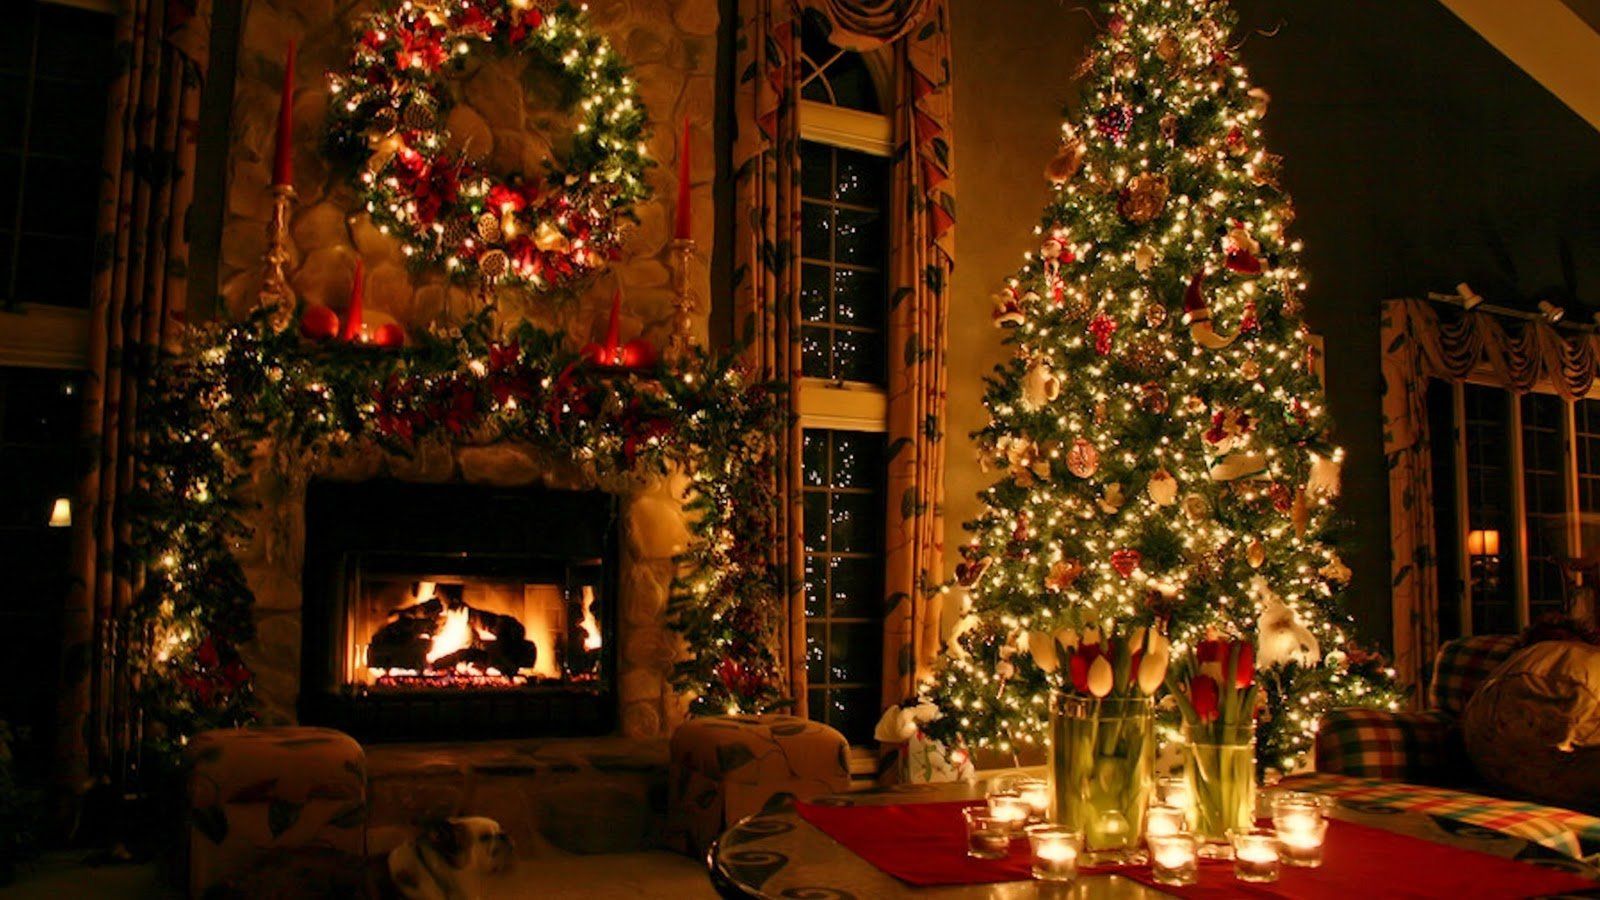 Sắc trắng, cánh đỏ ấm áp là bức chân dung quen thuộc về một mùa Giáng sinh đầy ý nghĩa. Hãy cùng đón xem những Hình nền Giáng sinh cho laptop gợi nhớ về những khoảnh khắc đáng nhớ nhất của mùa lễ này nhé! (#Christmaslaptopwallpapers) 